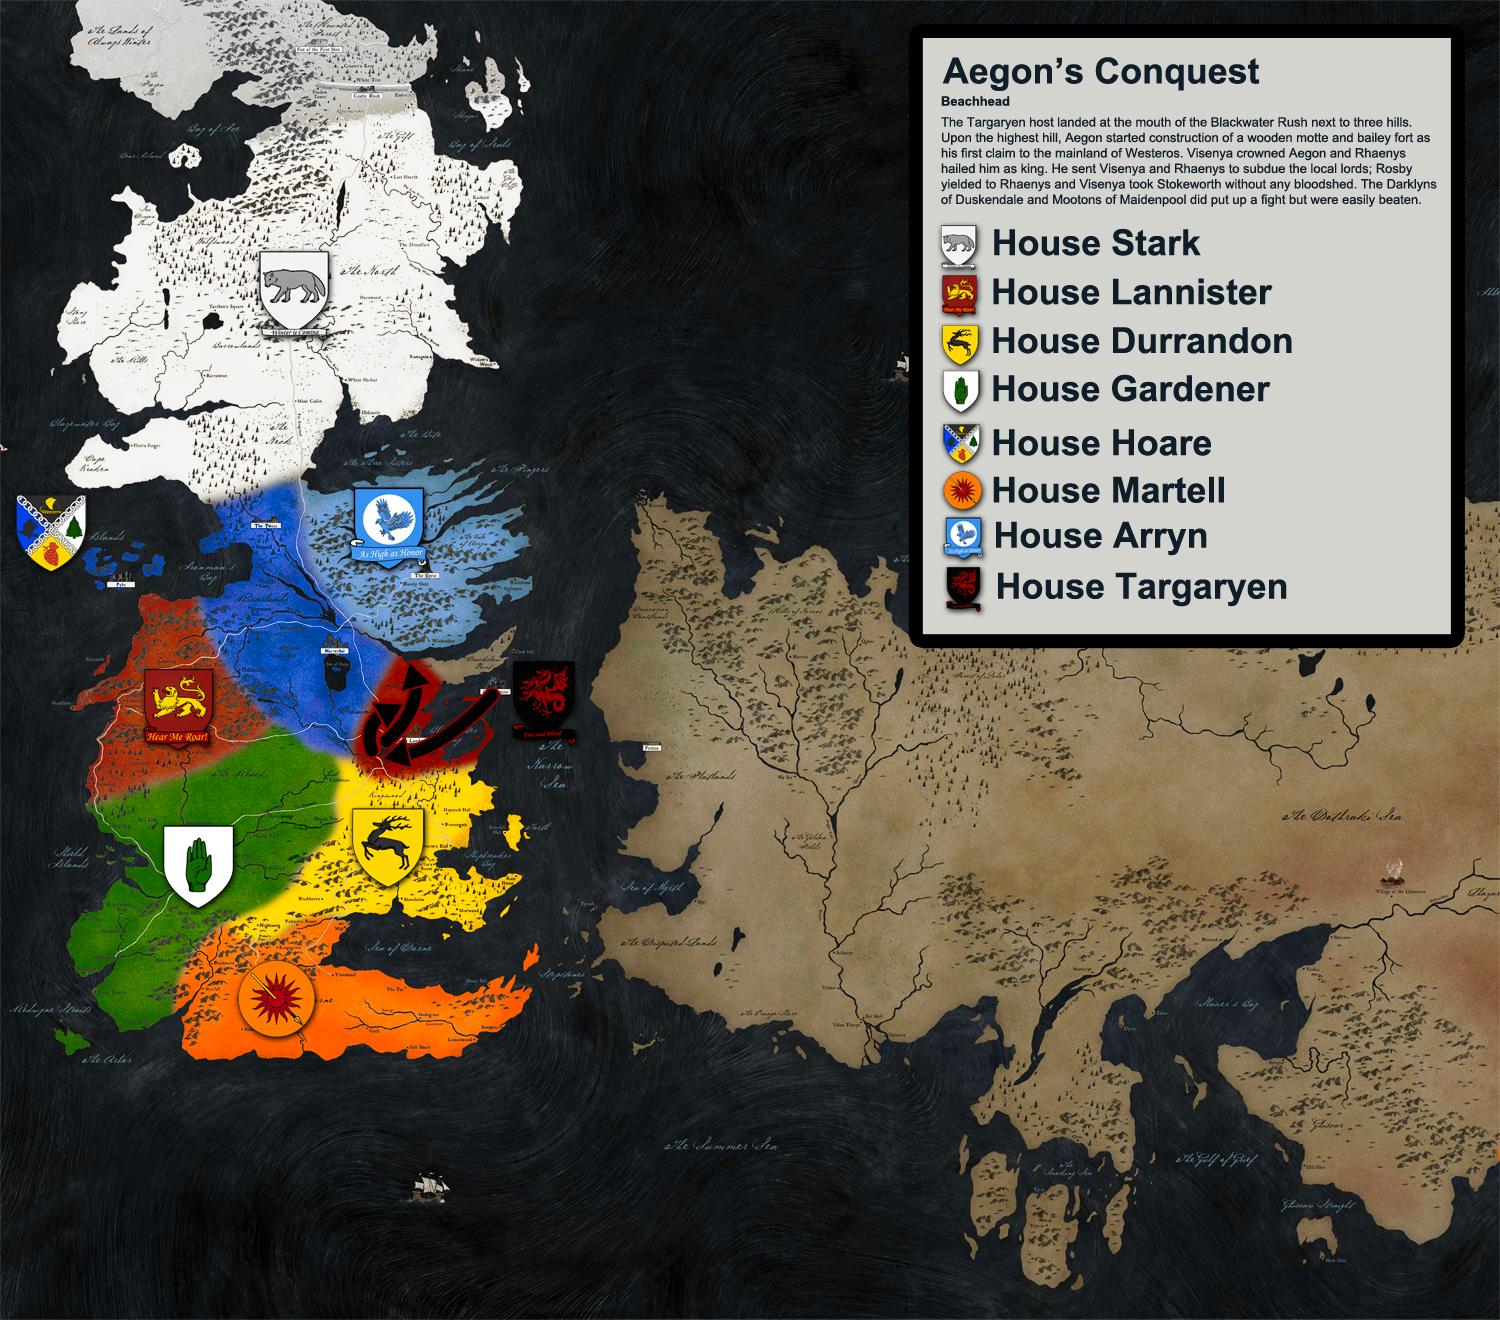 Imguranvändaren cucumbergbrousselsprouts har gjort fantastiska kartor av den fiktiva historien i “Game of Thrones” - komplett med folkförflyttningspilar.